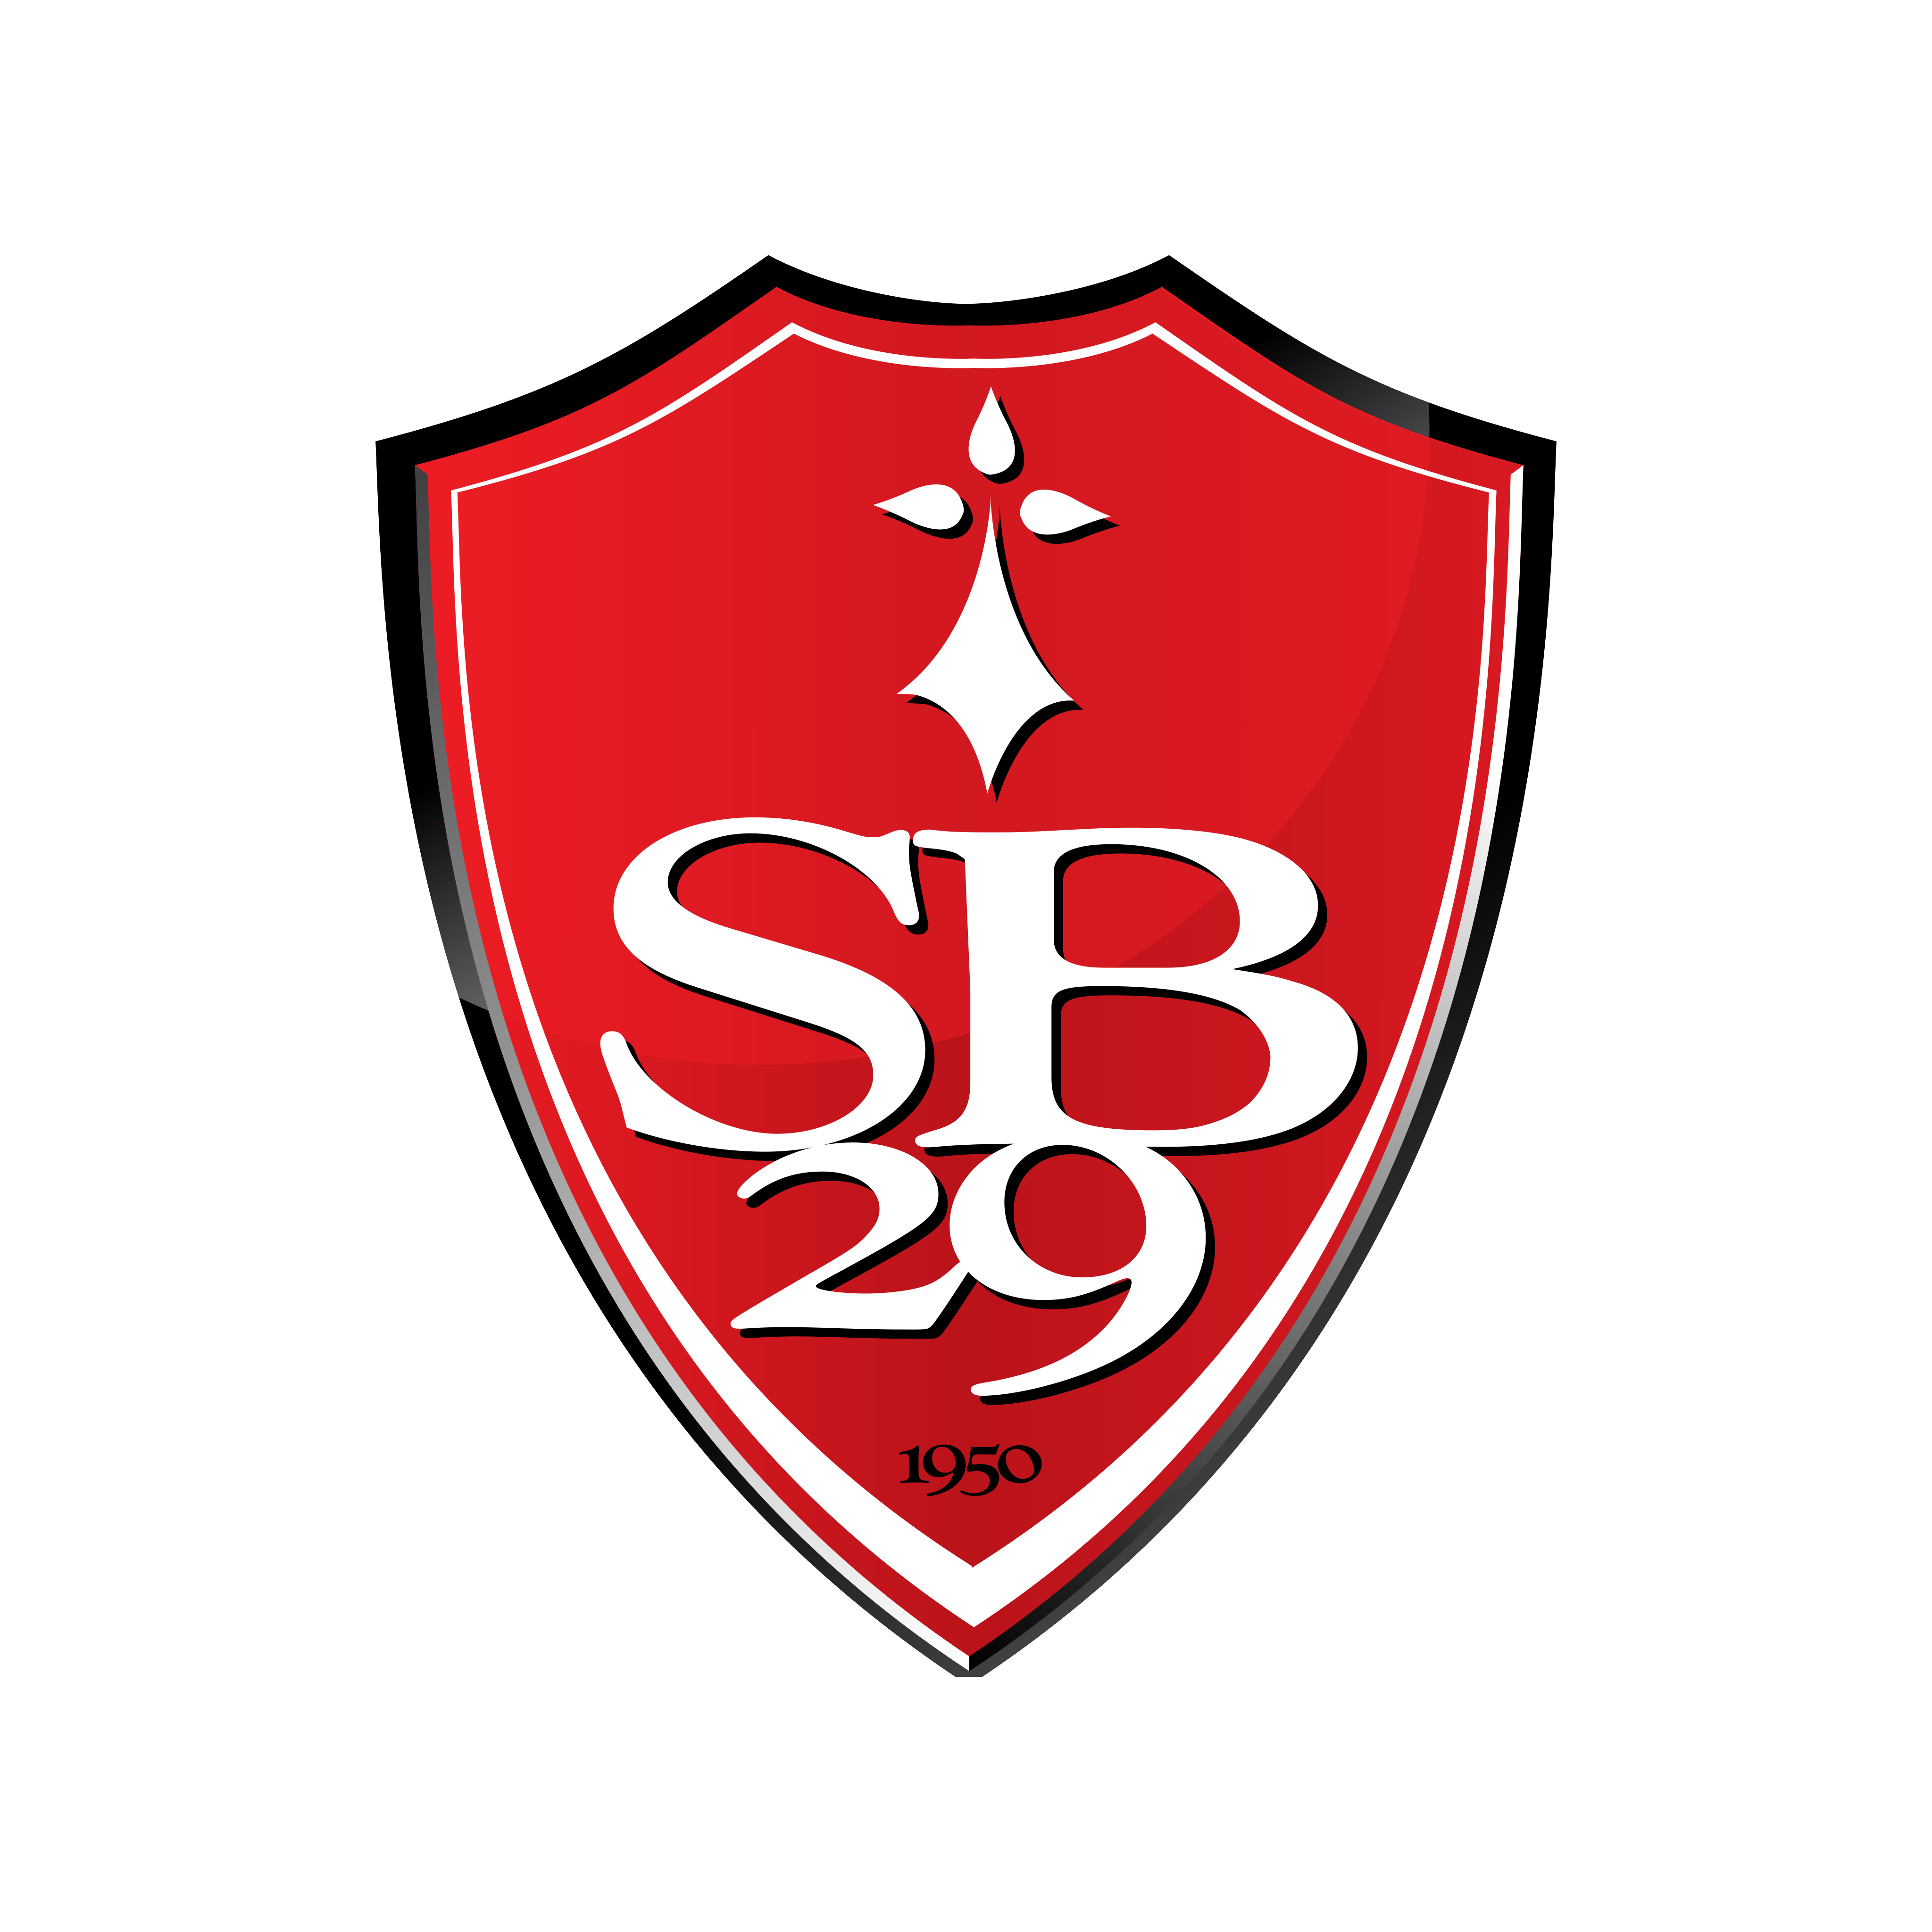 Stade Brestois 29 Logo PNG.